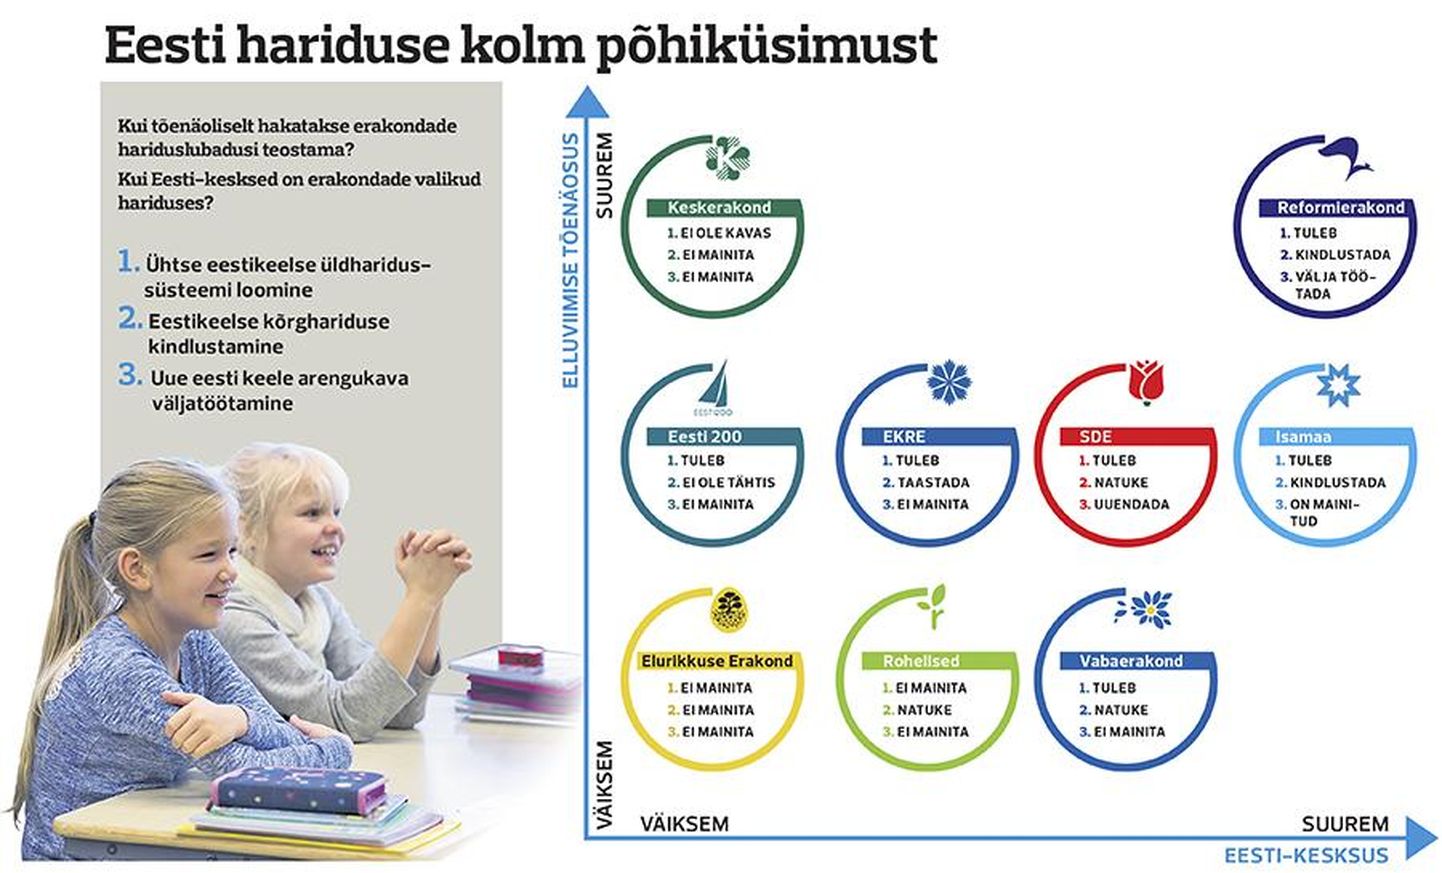 Erakondade poliitilised valikud Eesti hariduse kolmes põhiküsimuses.